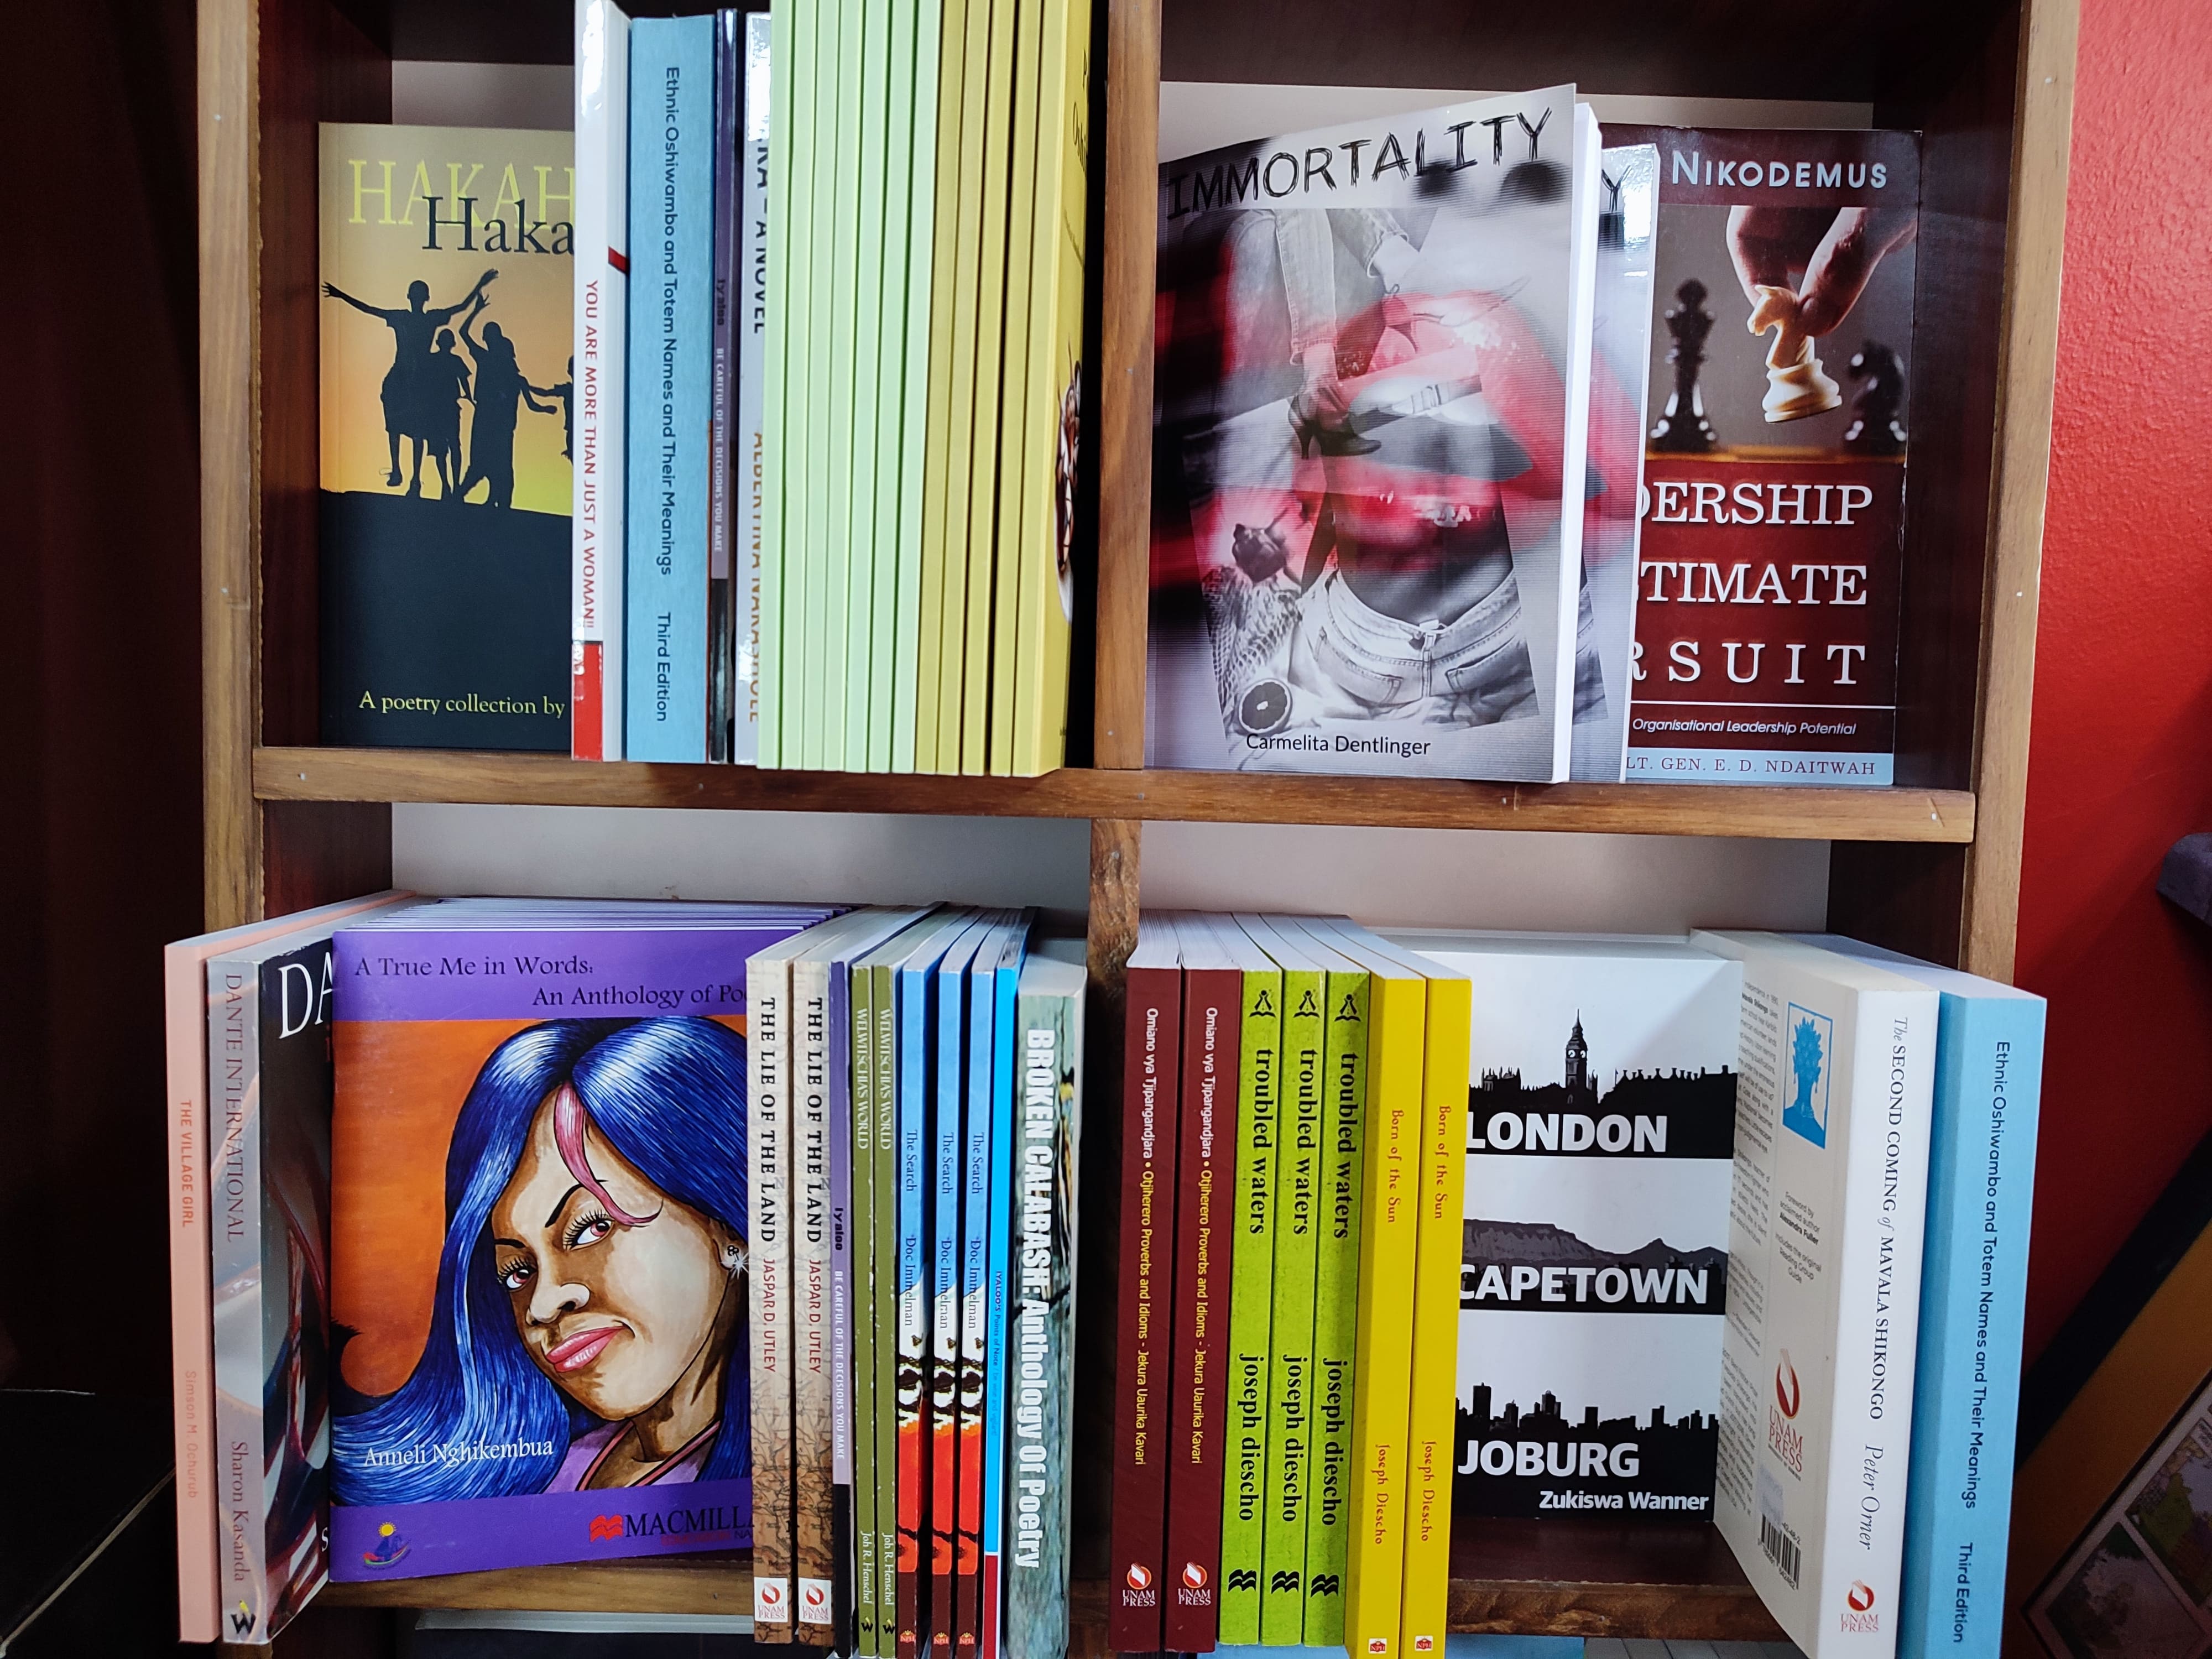 Riwaya: Gabinete de lectura de novela africana